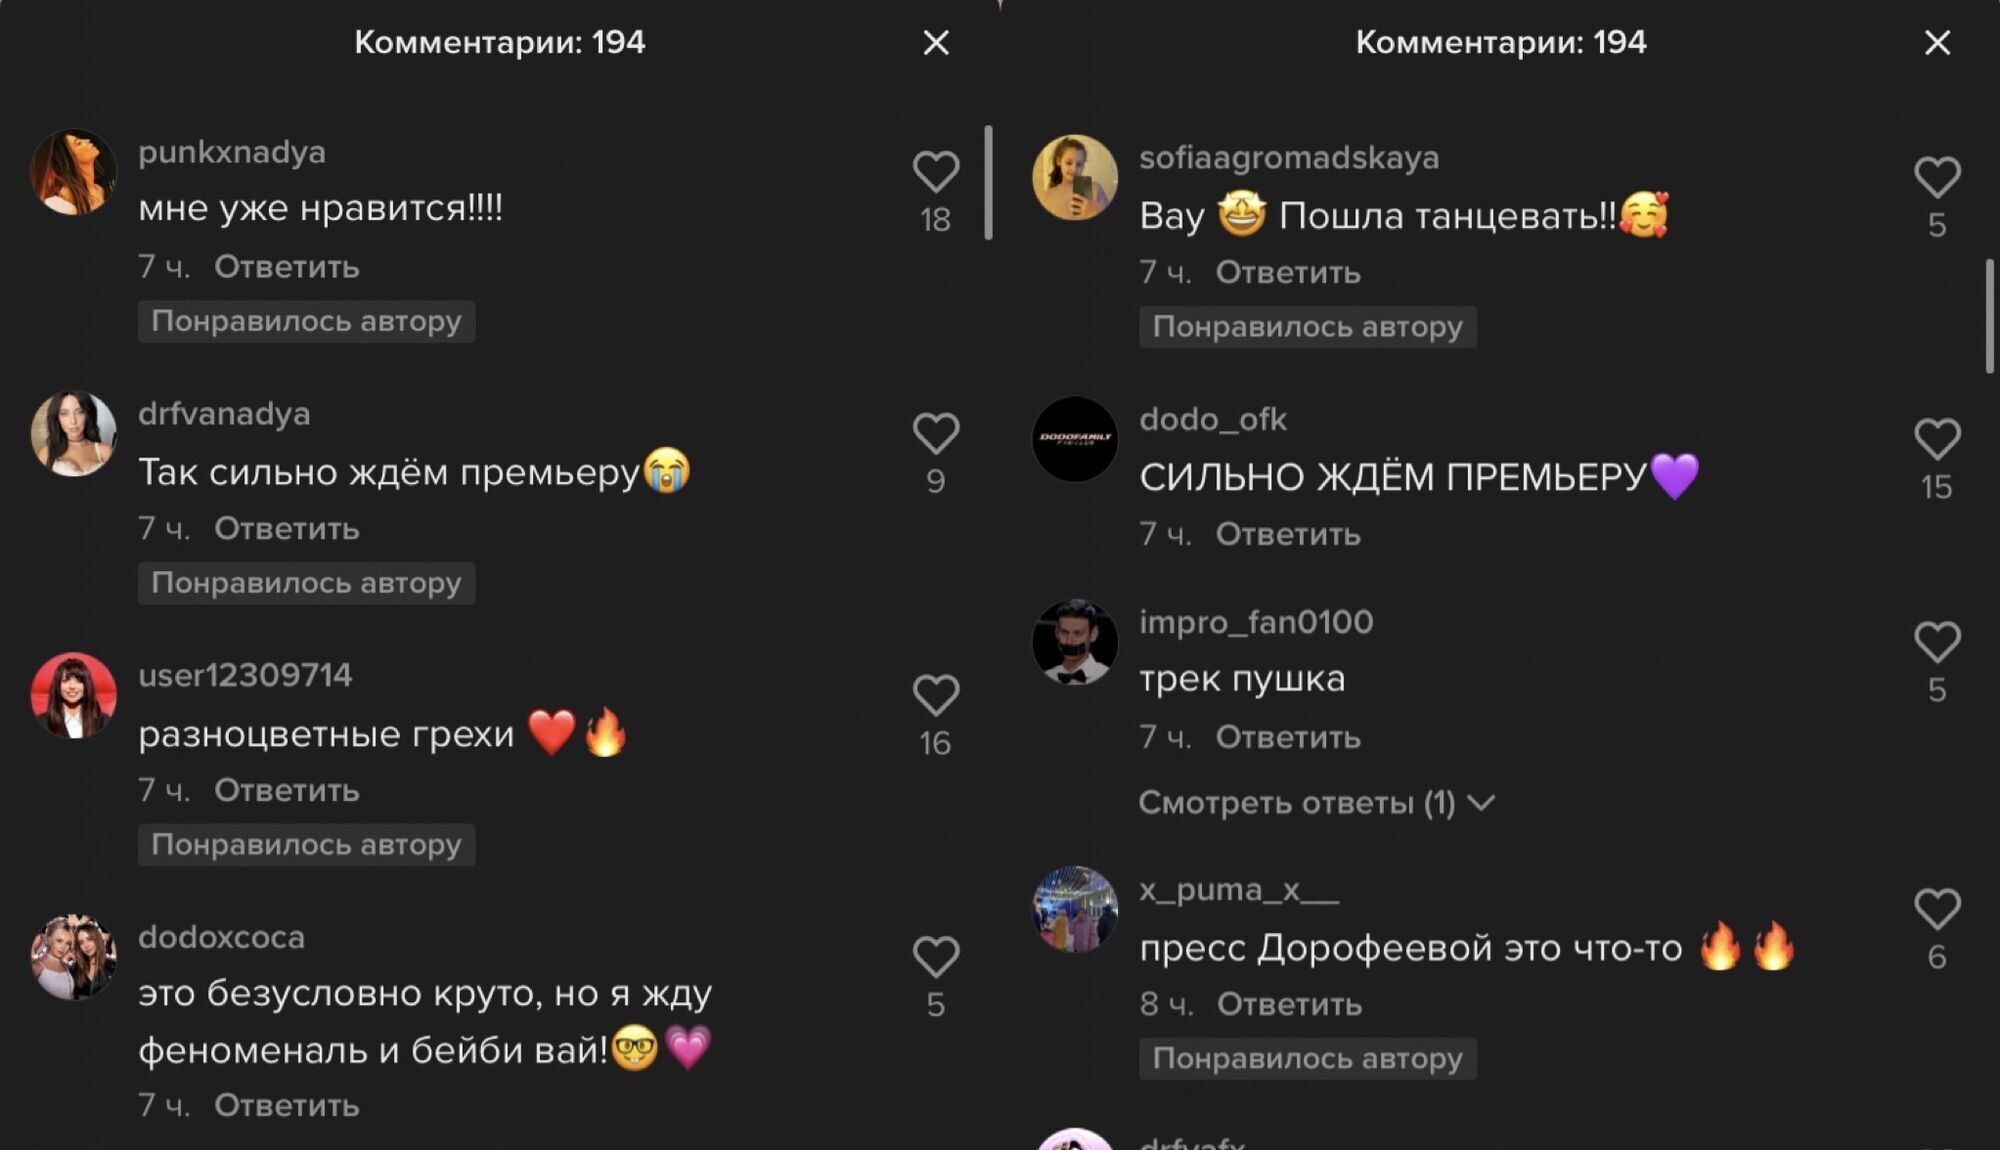 Коментарі під відео Наді Дорофєєвої